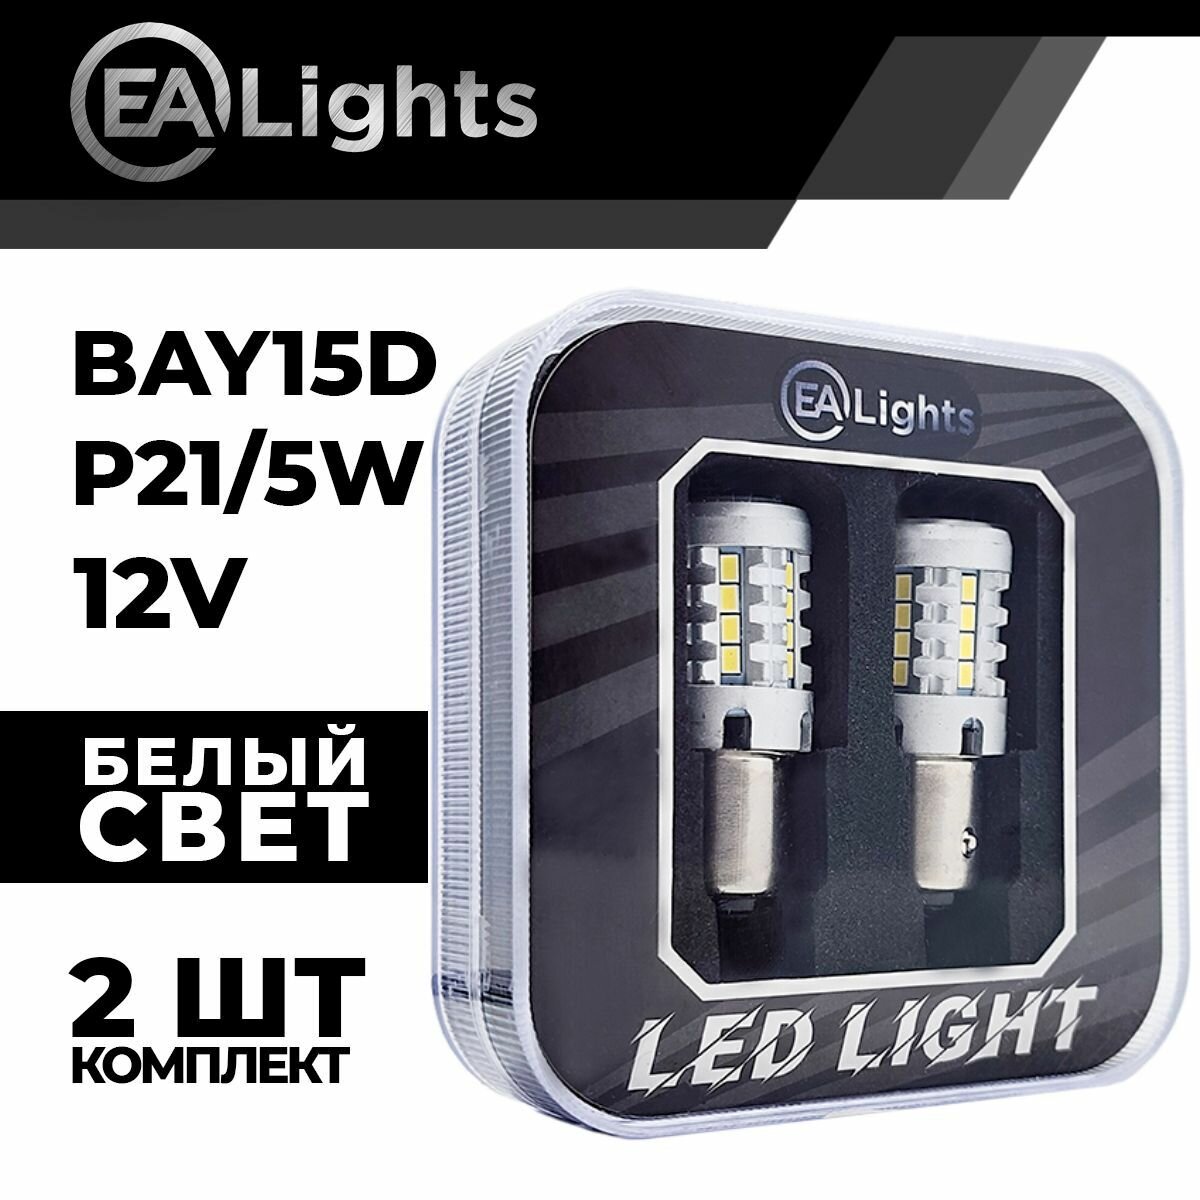 Автомобильная светодиодная LED лампа BAY15D P21/5W (чип 3020-26) для габаритных огней и ДХО, 12в белый свет, 2 шт